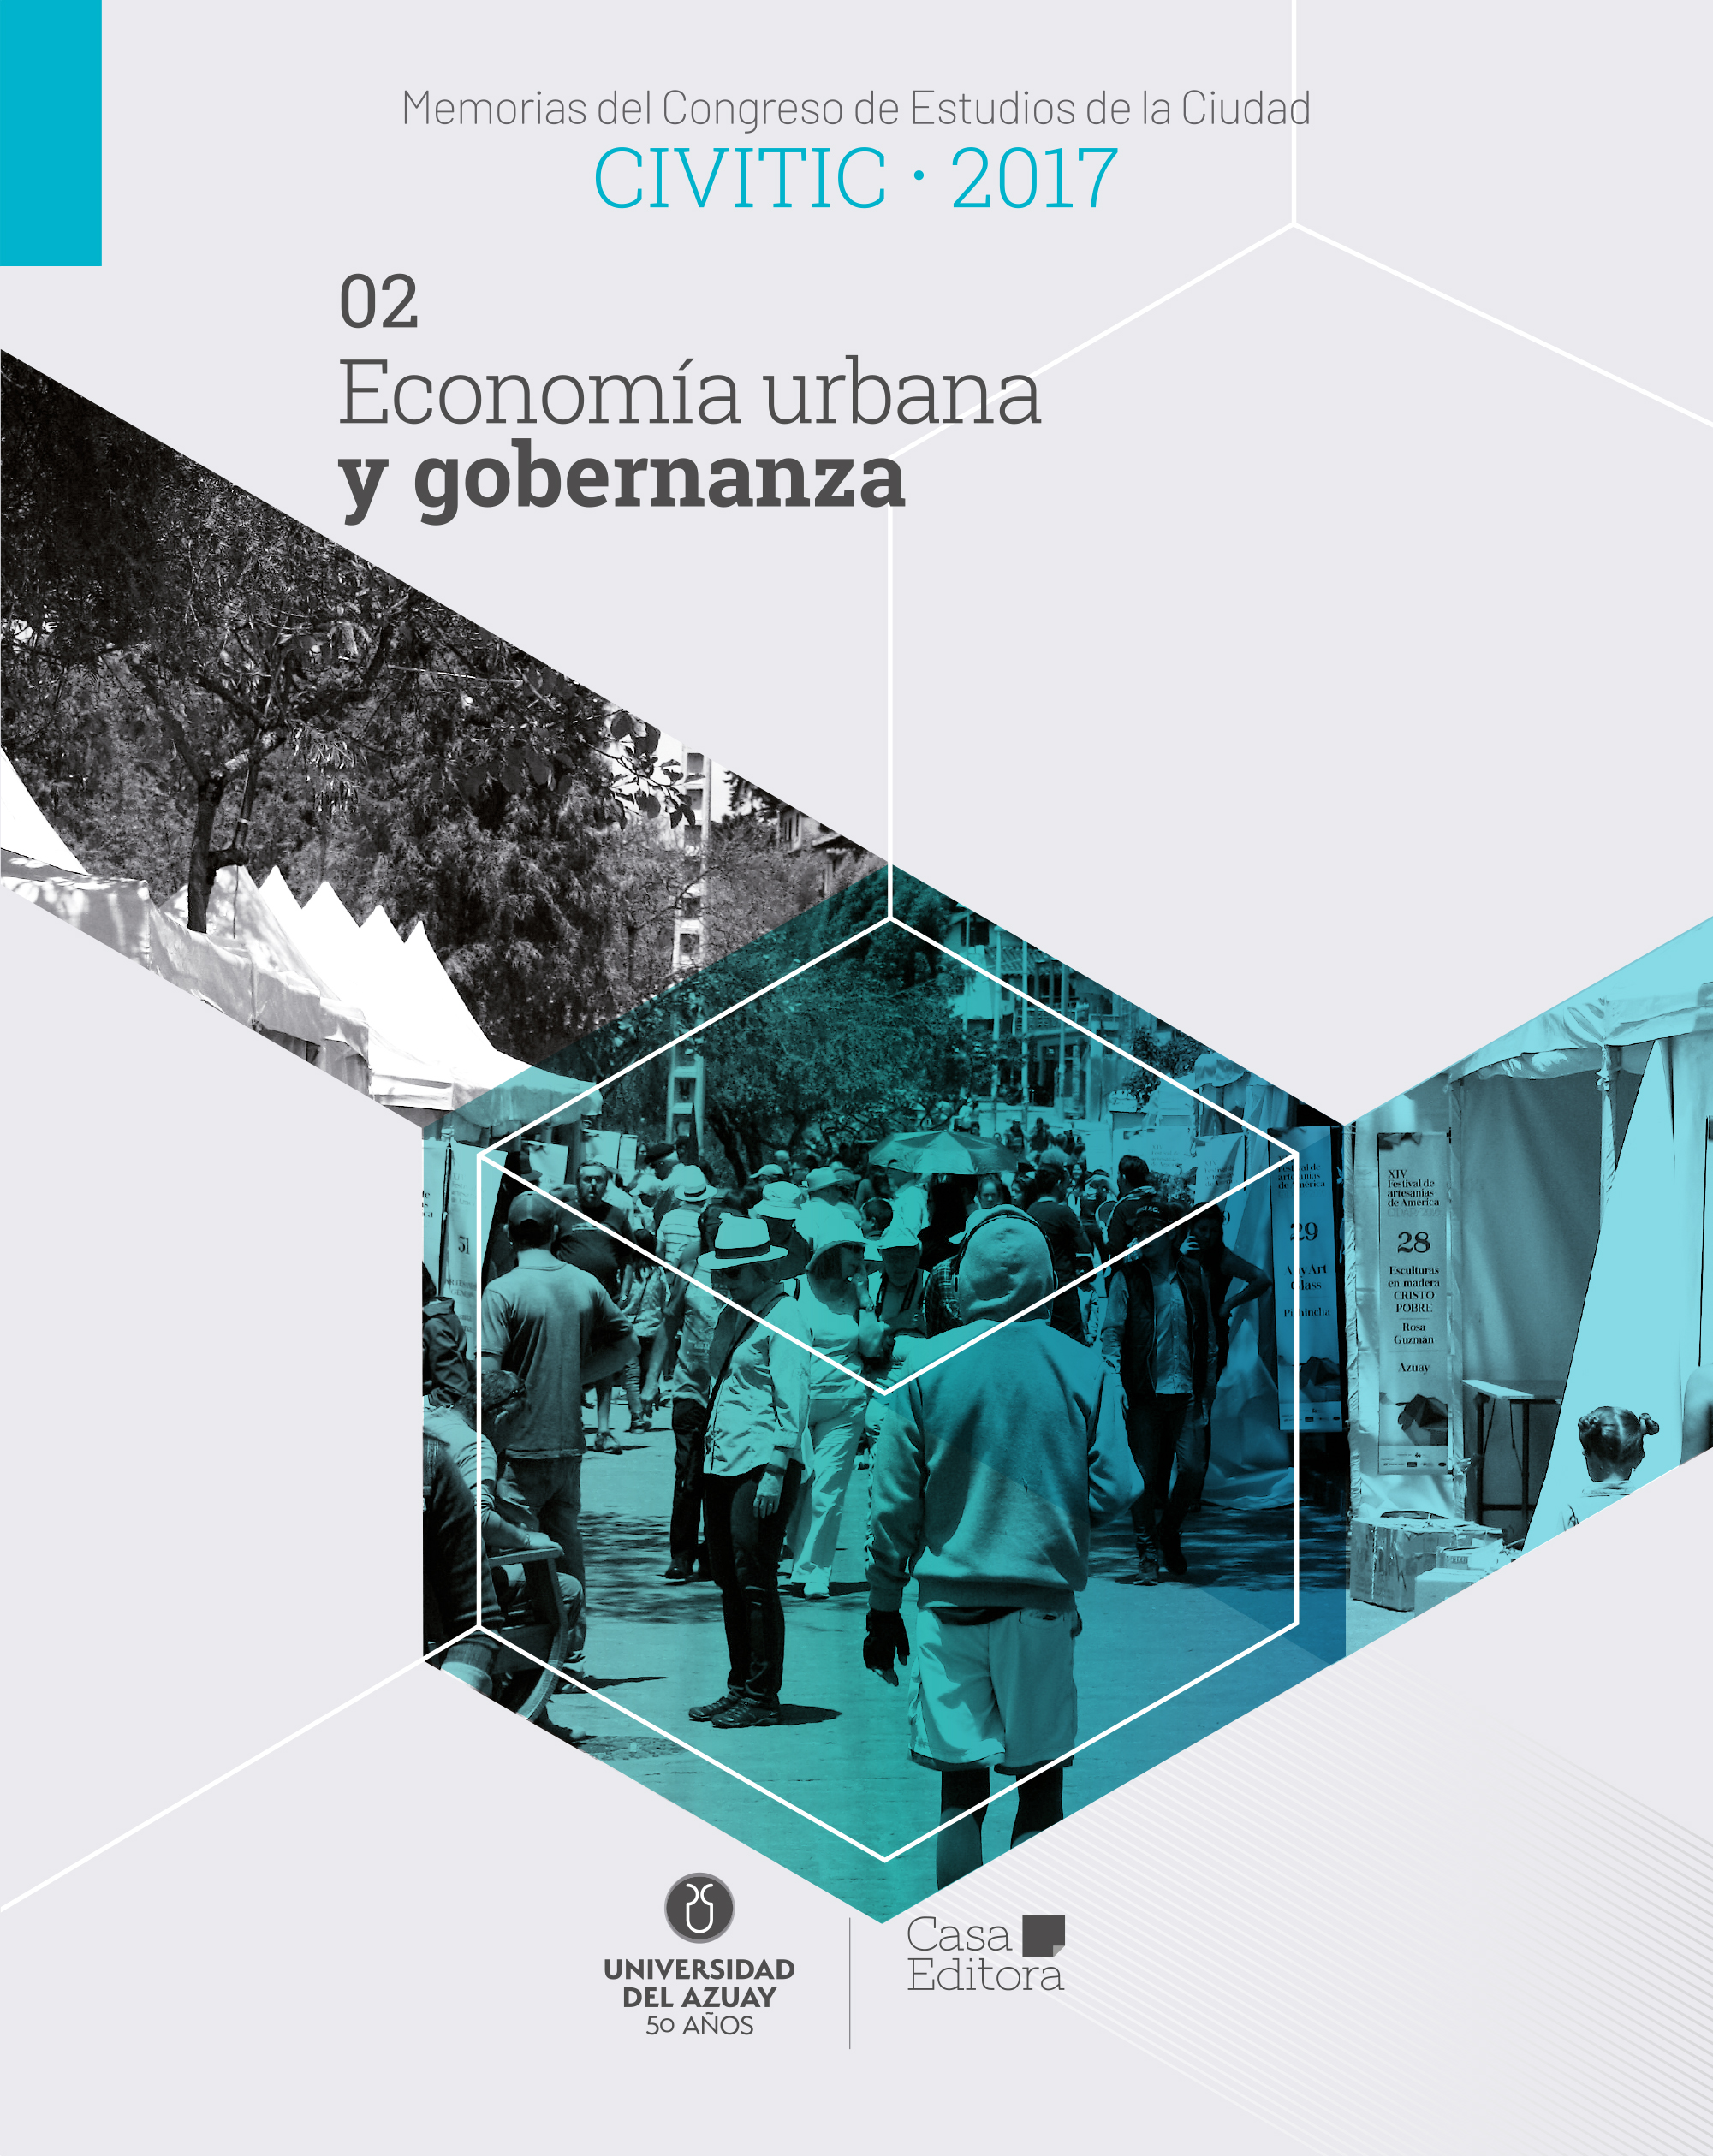 					Afficher Memorias del Congreso de Estudios de la Ciudad CIVITIC 2017 - Economía urbana y gobernanza
				